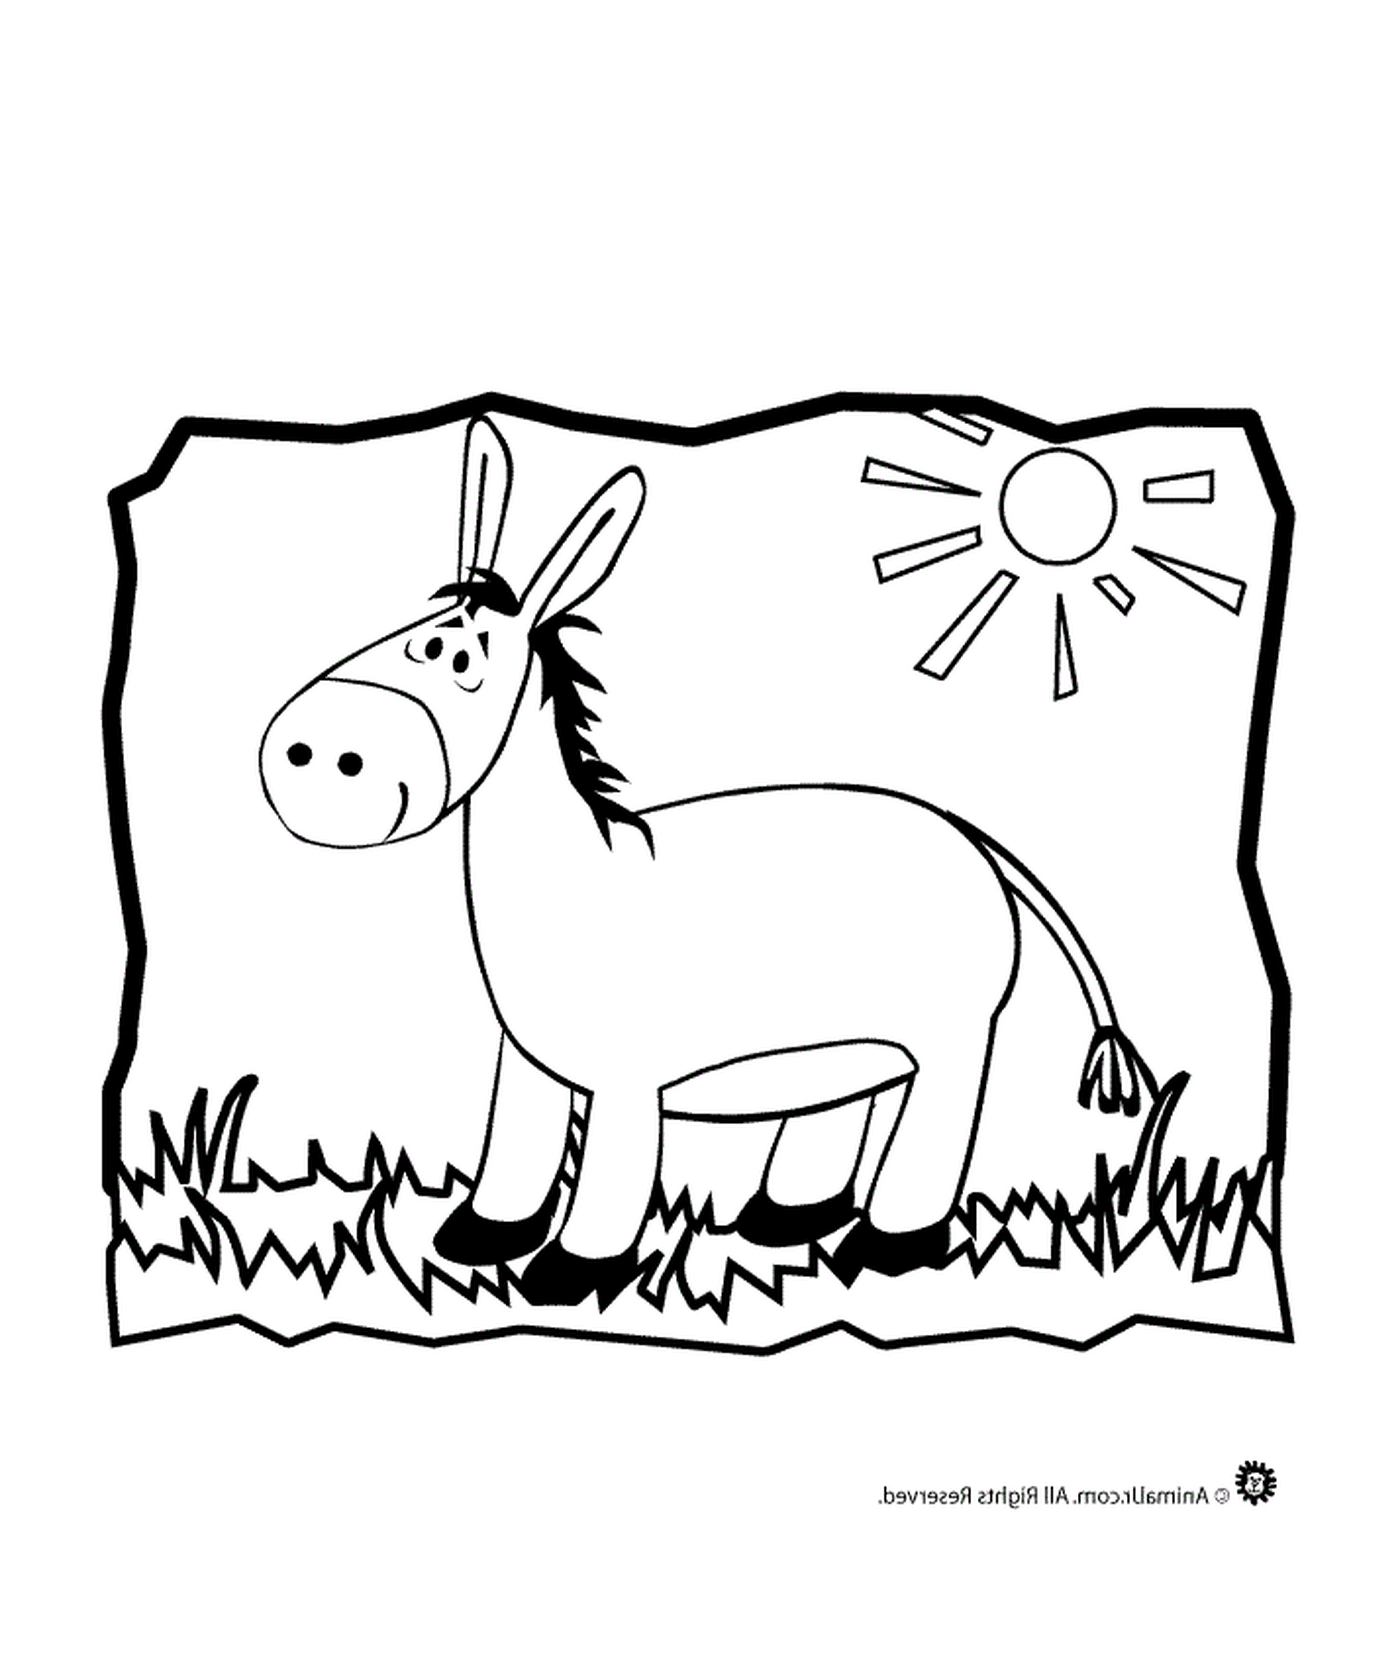   Un âne debout dans un champ 